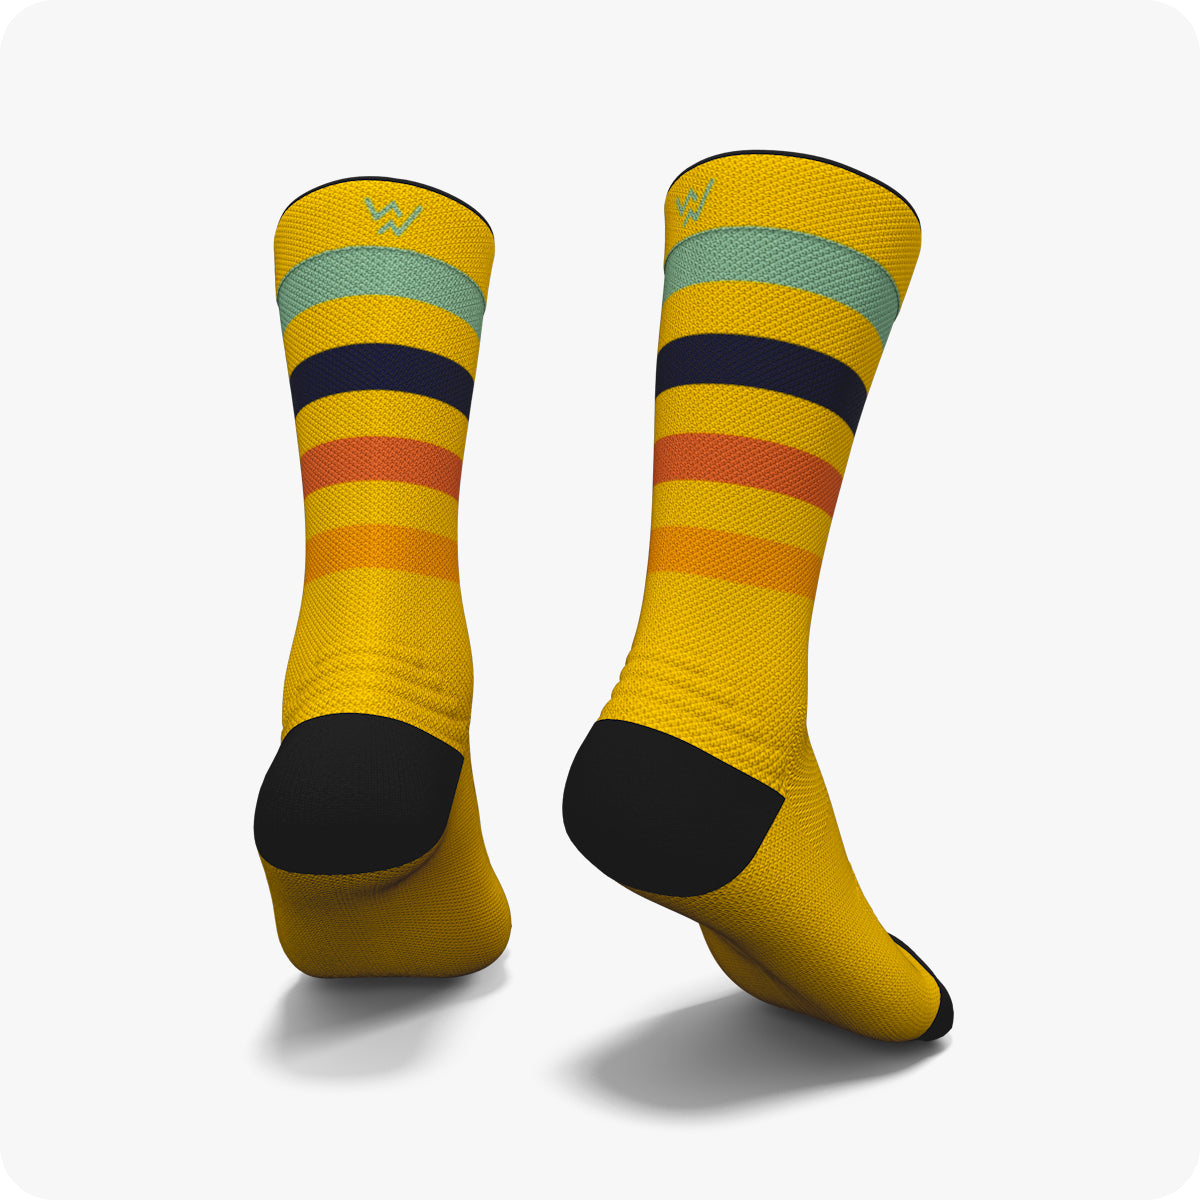 STRIPES - Striped Socks